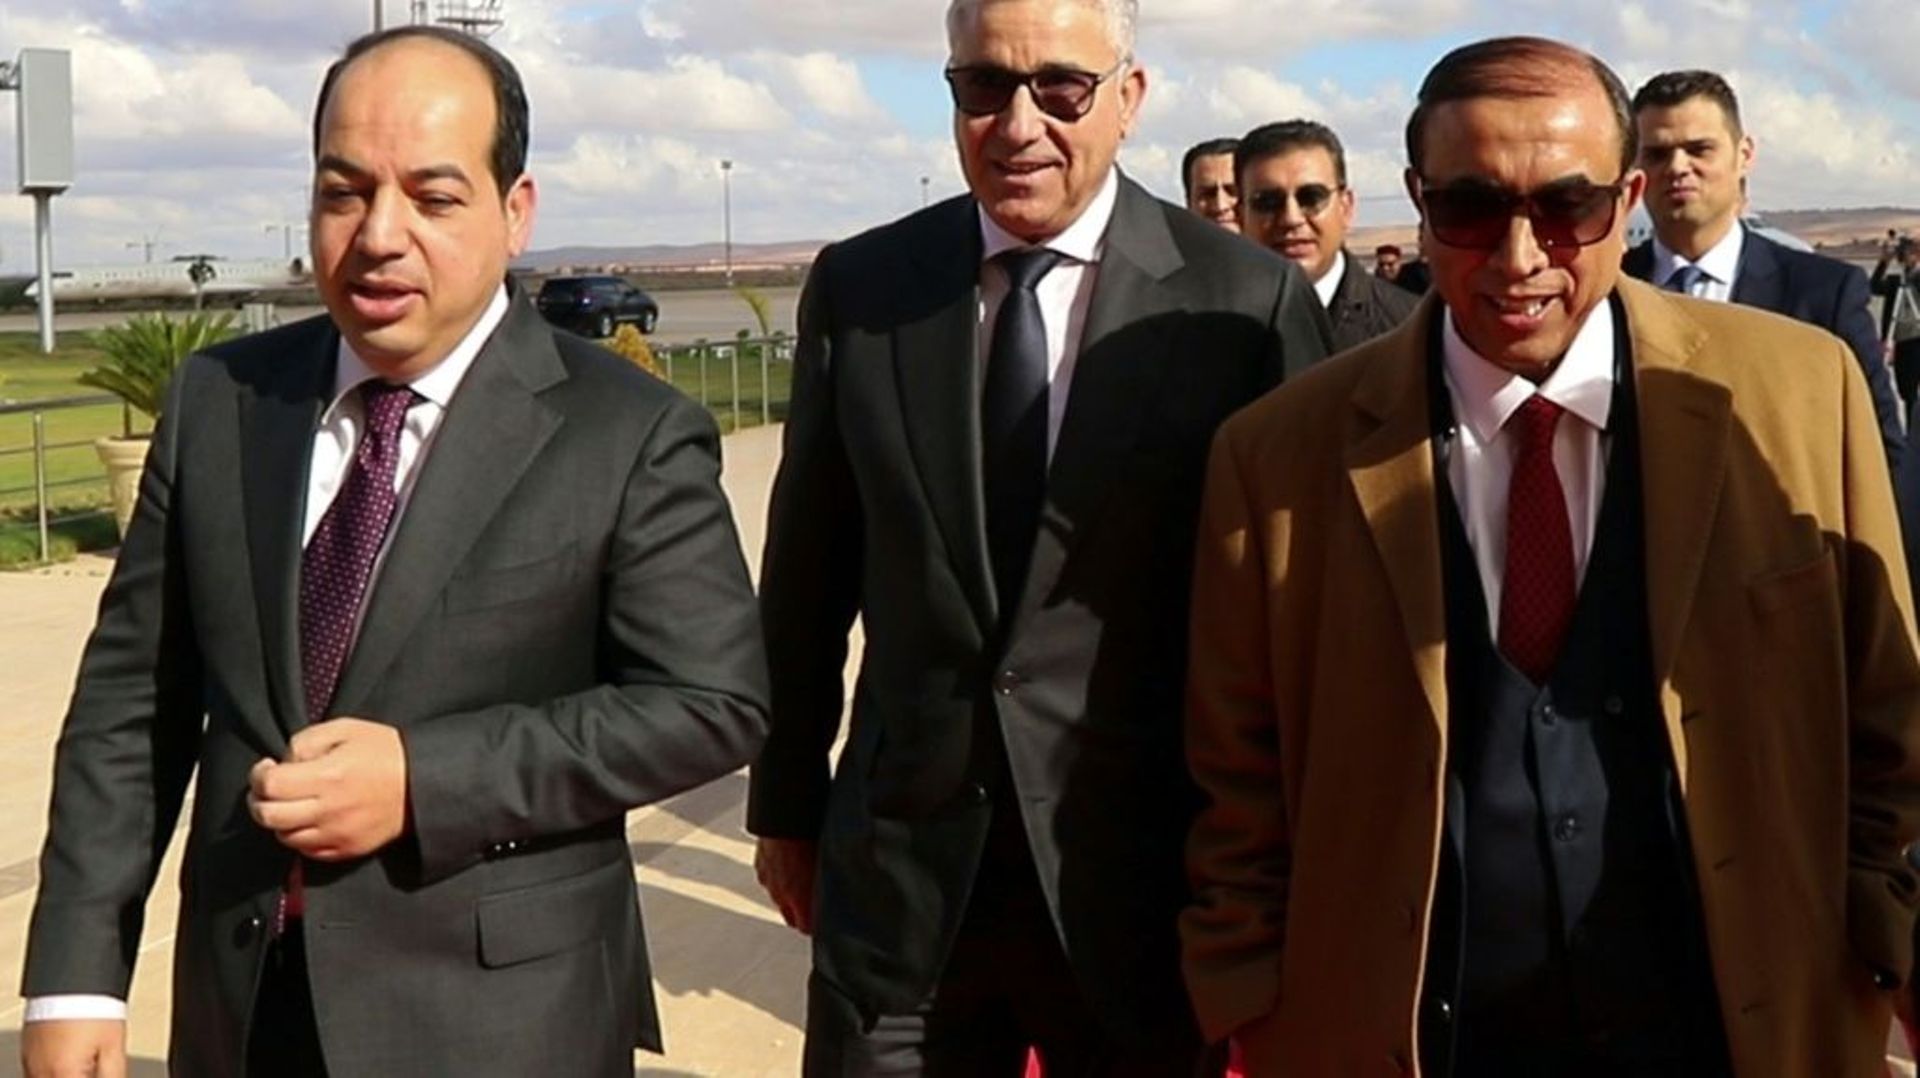 Des candidats clés à la présidentielle en Libye Ahmed Meitig (G) et Fathi Bachagha (C) arrivent à Benghazi (est) pour rencontrer le maréchal Khalifa Haftar, le 21 décembre 2021